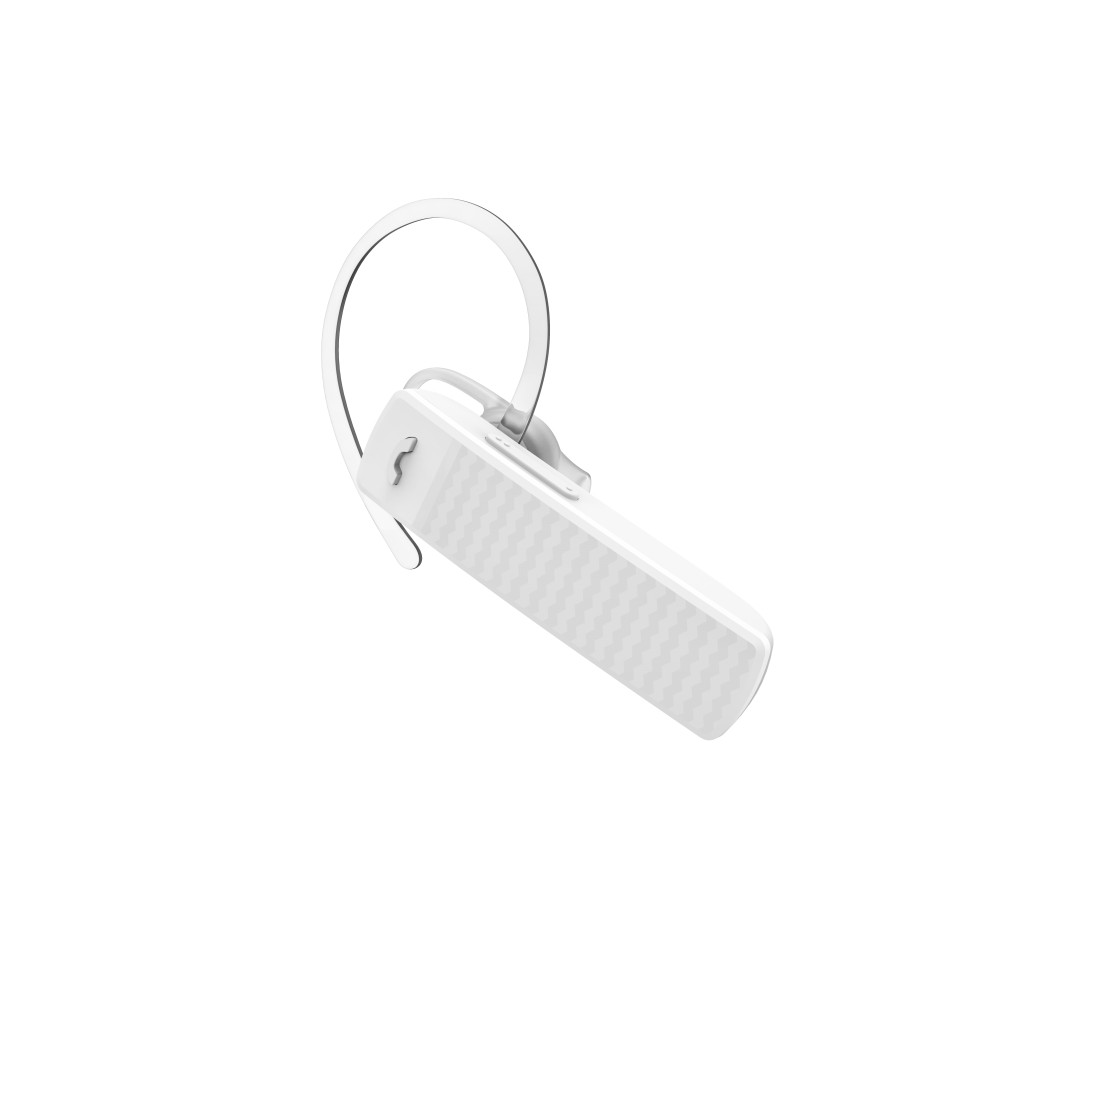 Hama Mono-Bluetooth®-Headset MyVoice1500, Multipoint, Sprachsteuerung, Weiß